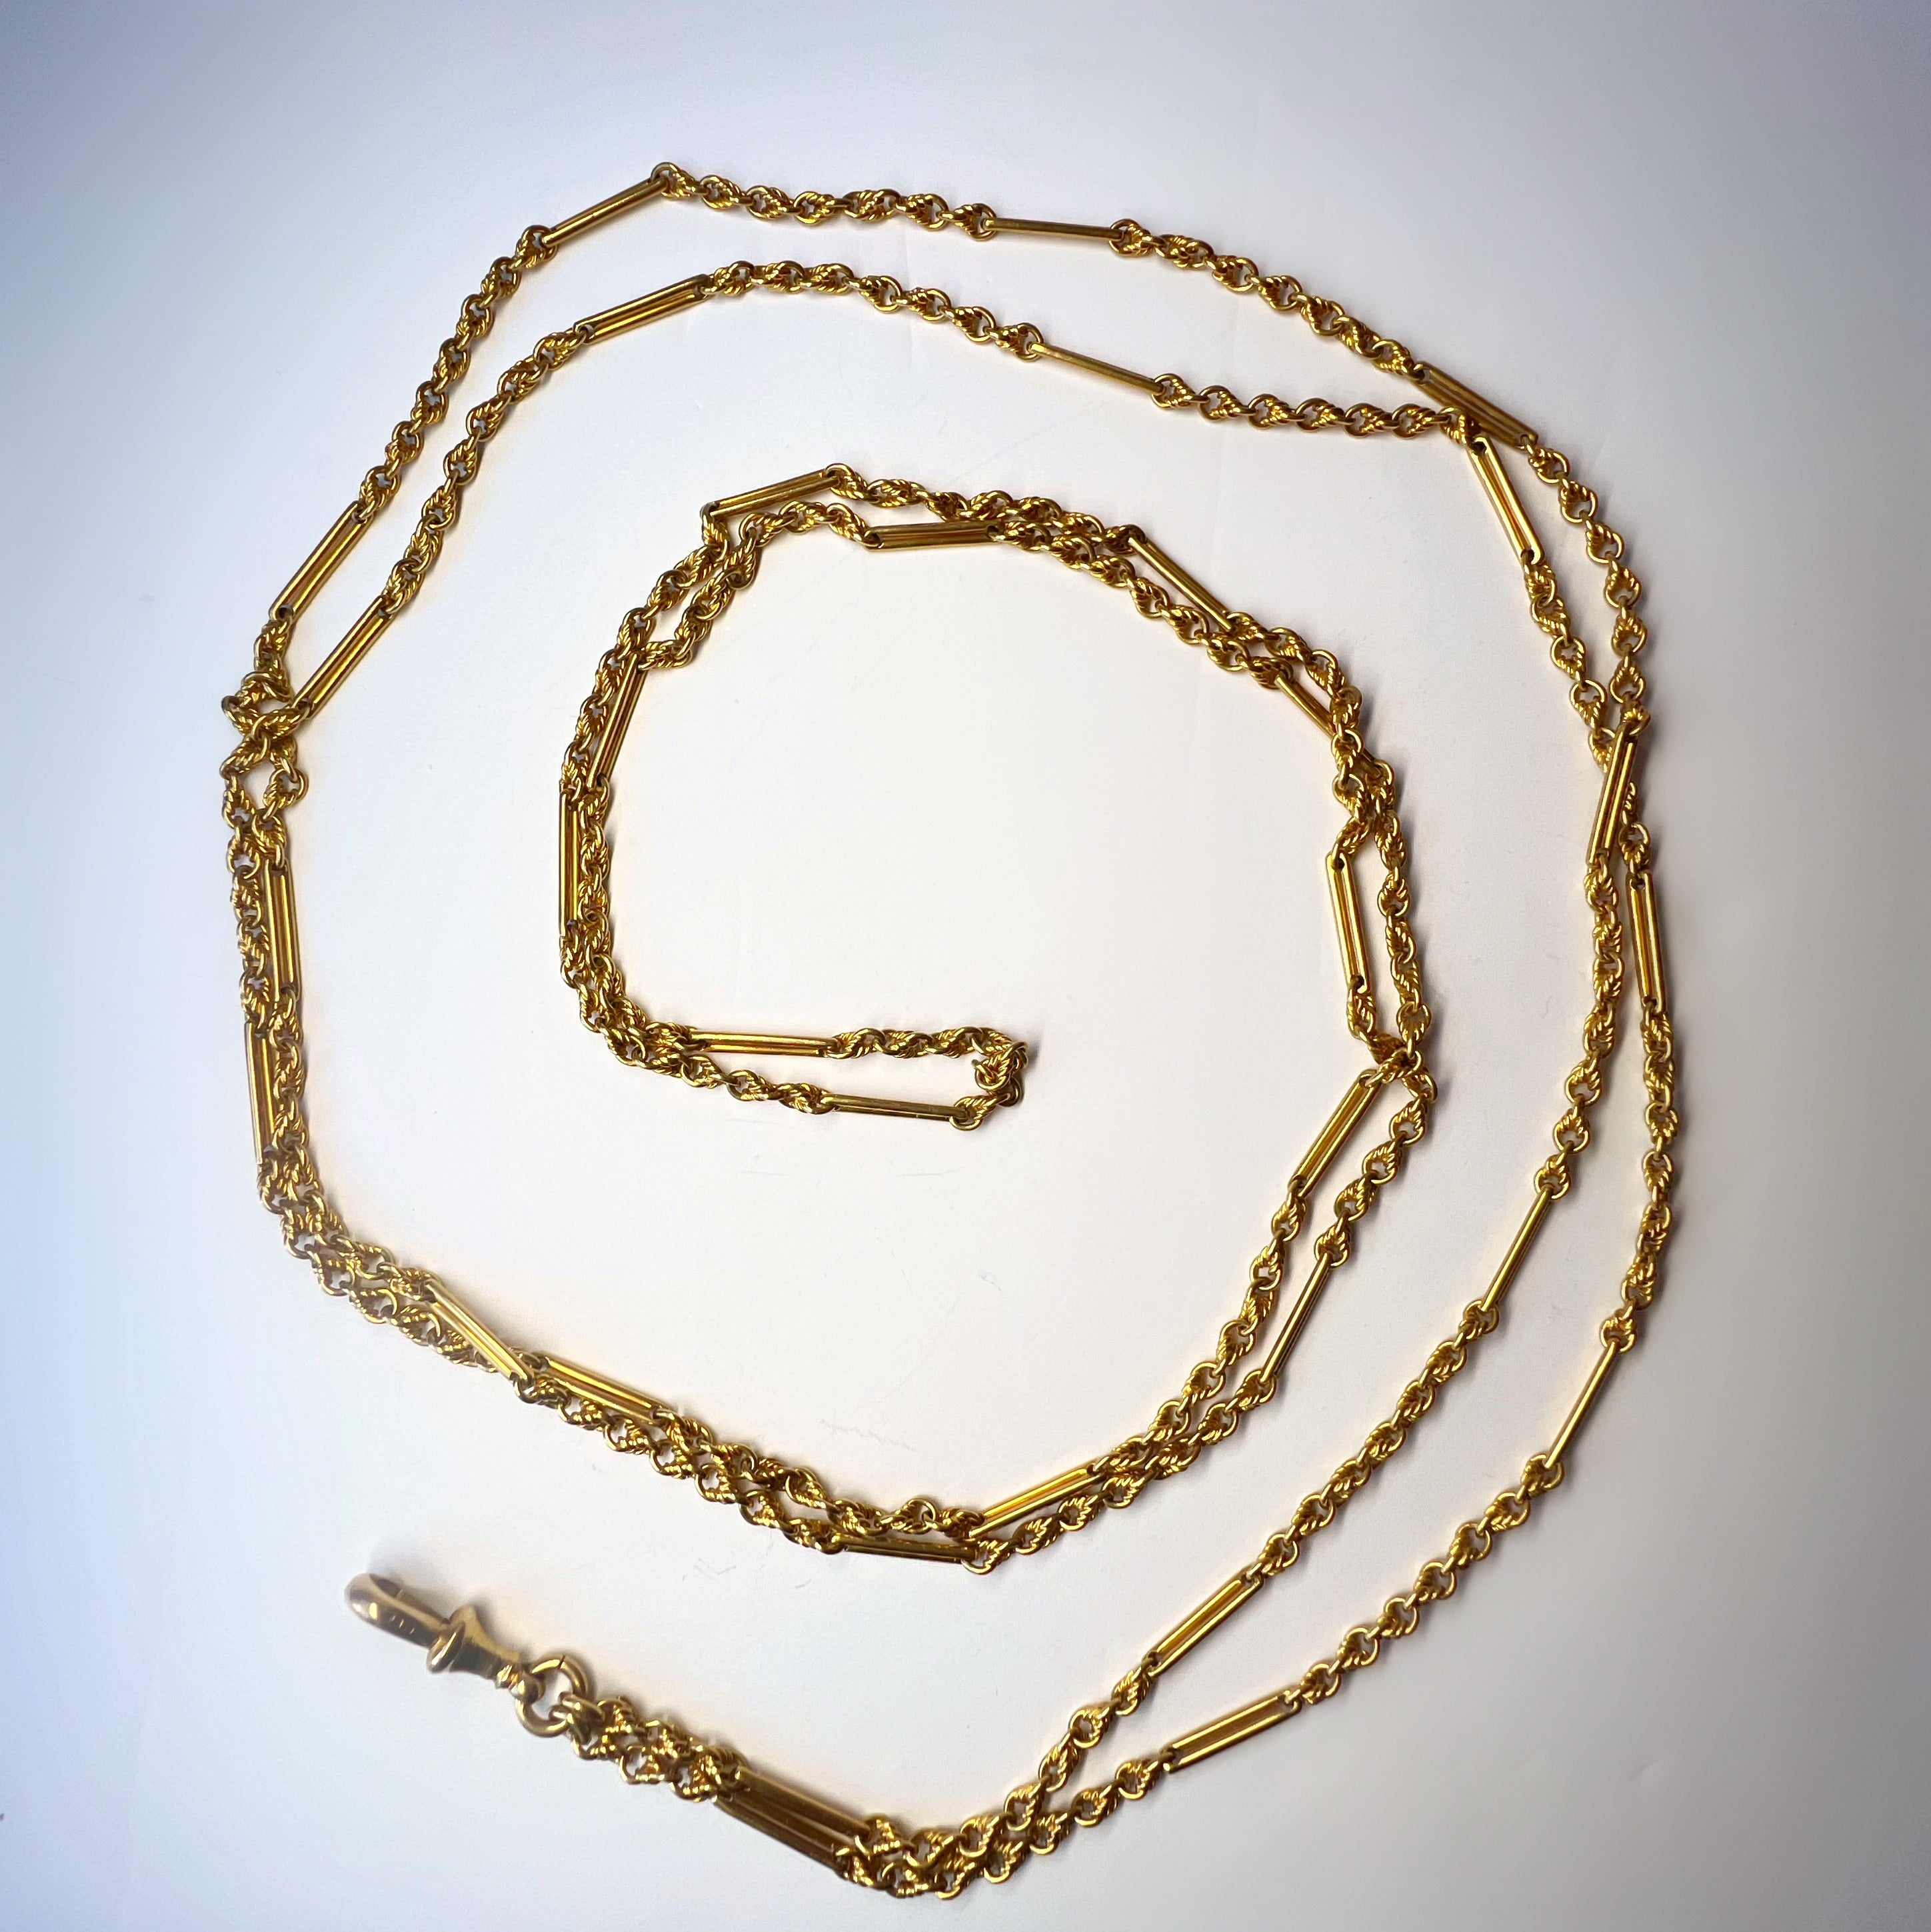 Antique 1.40m 18ct Gold Long Guard Chain